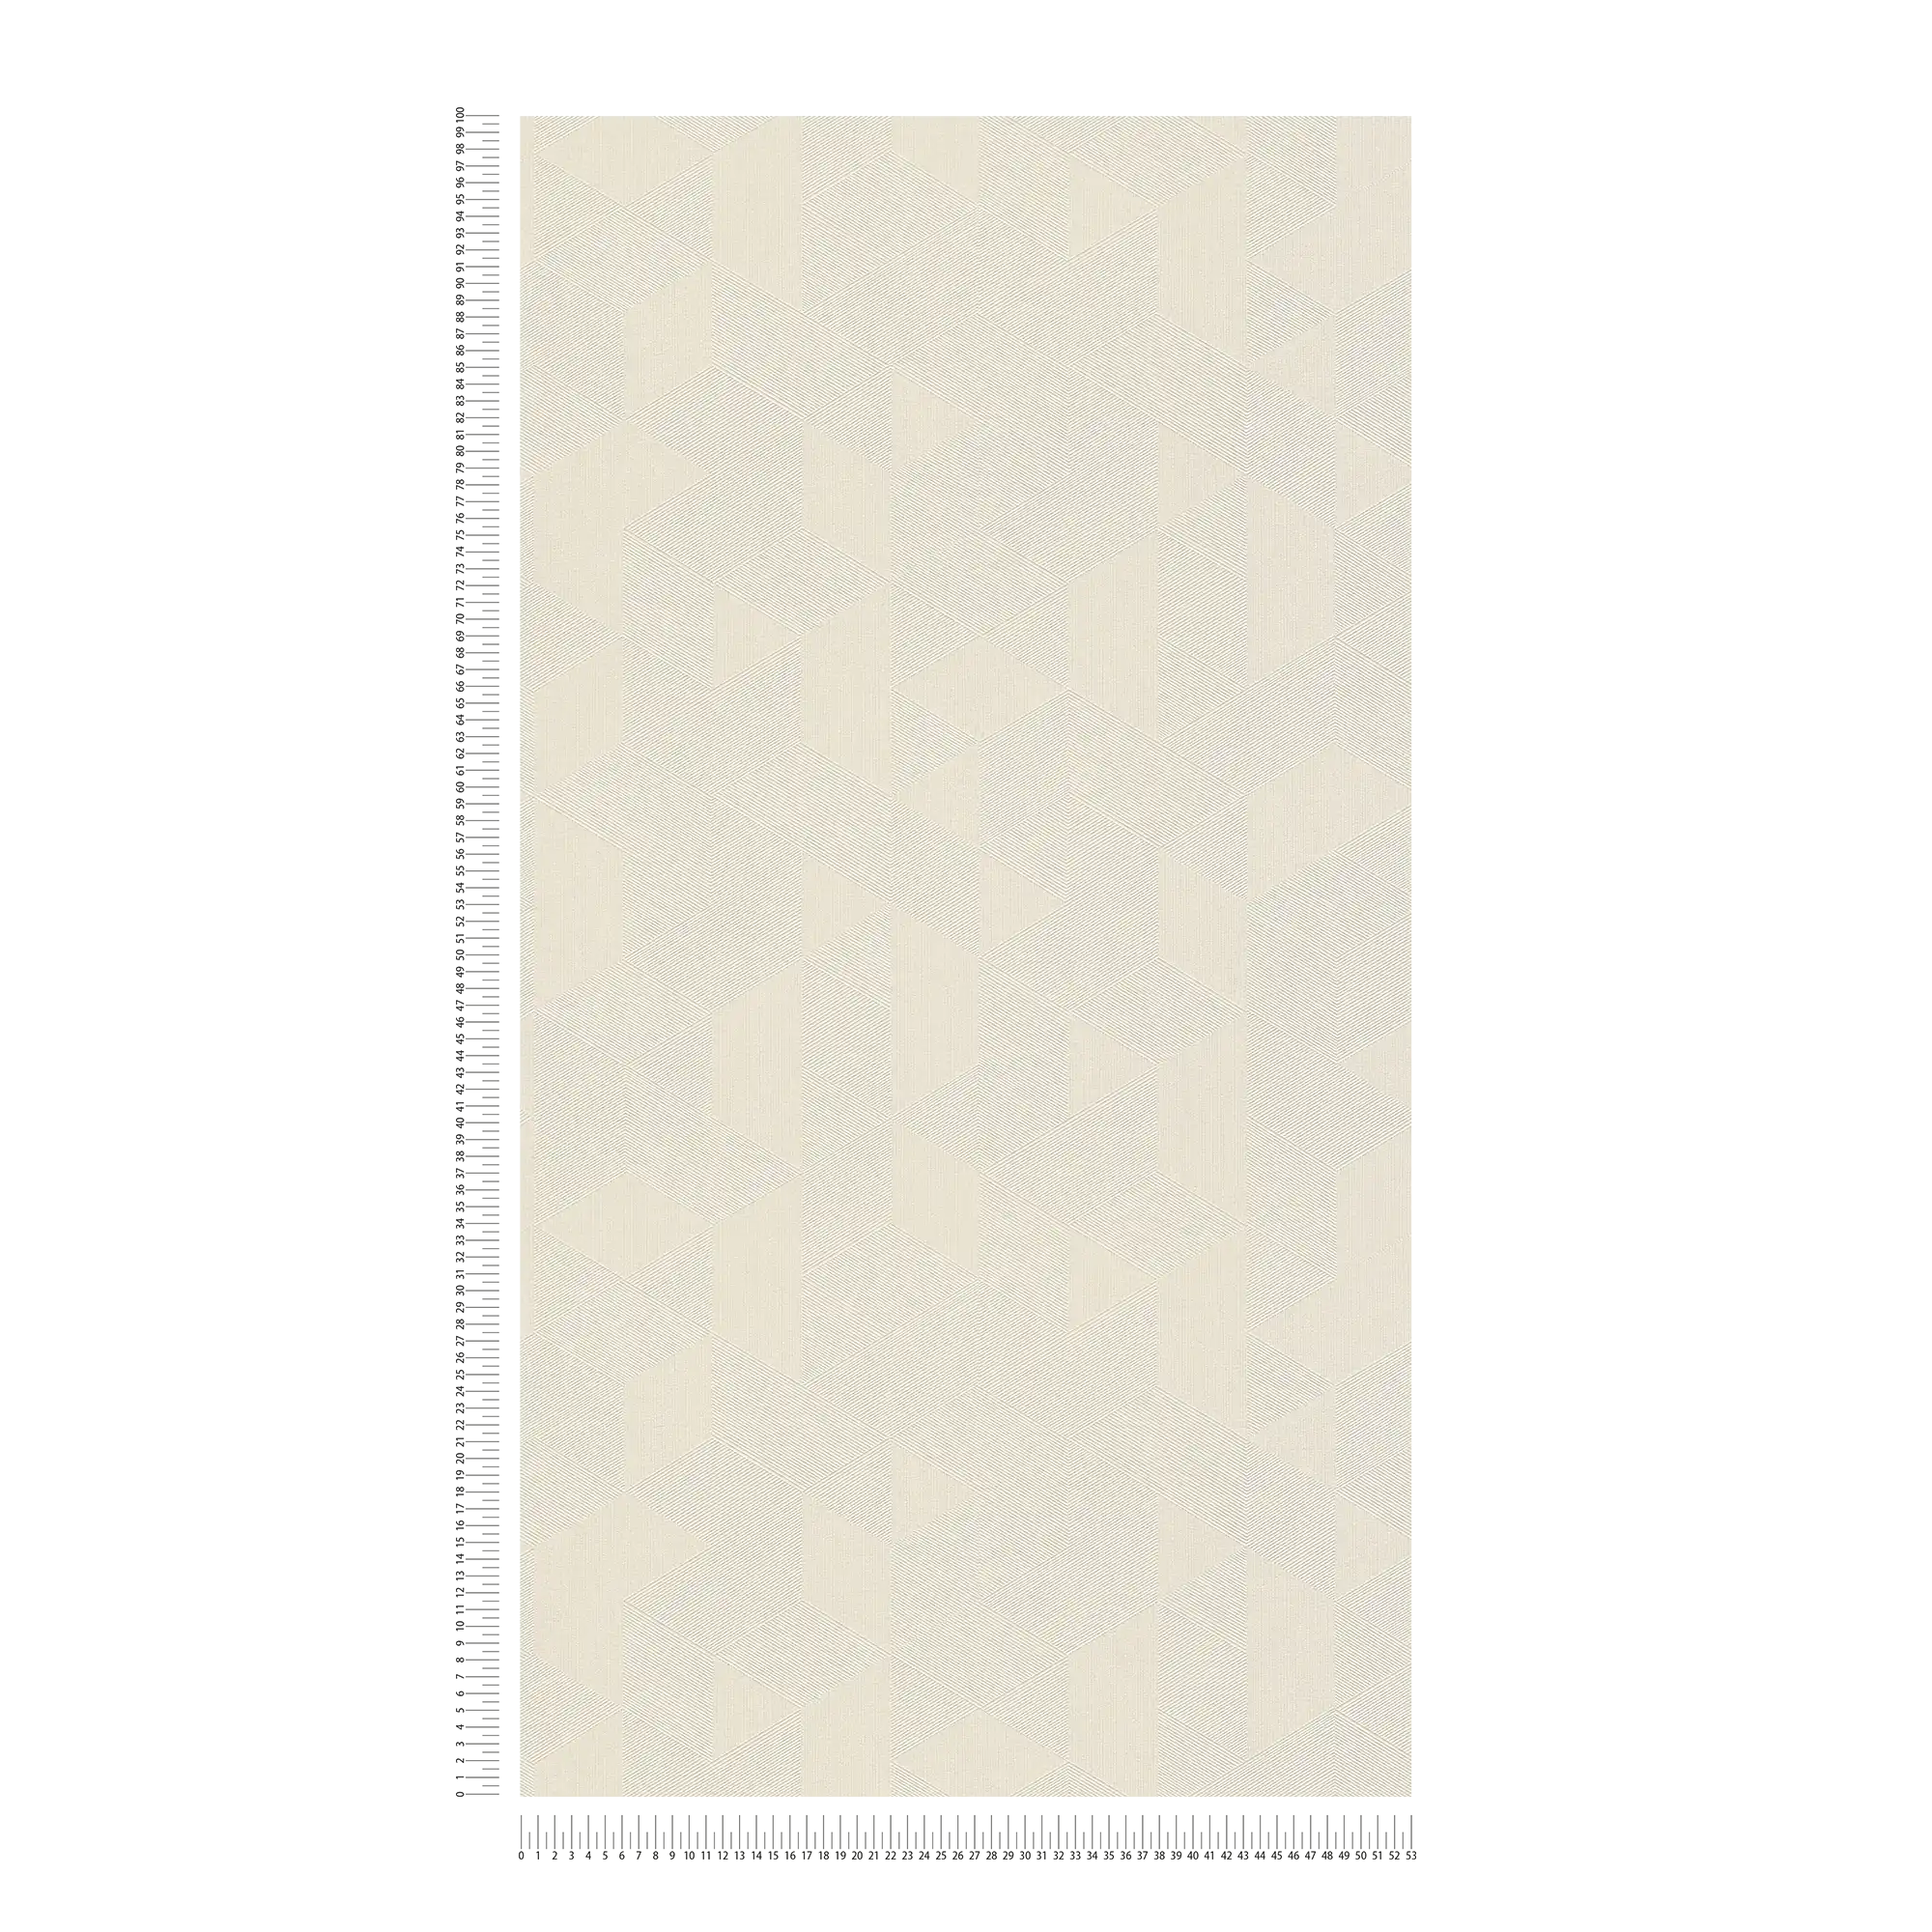             Carta da parati color crema con motivi tono su tono ed effetto shimmer - bianco
        